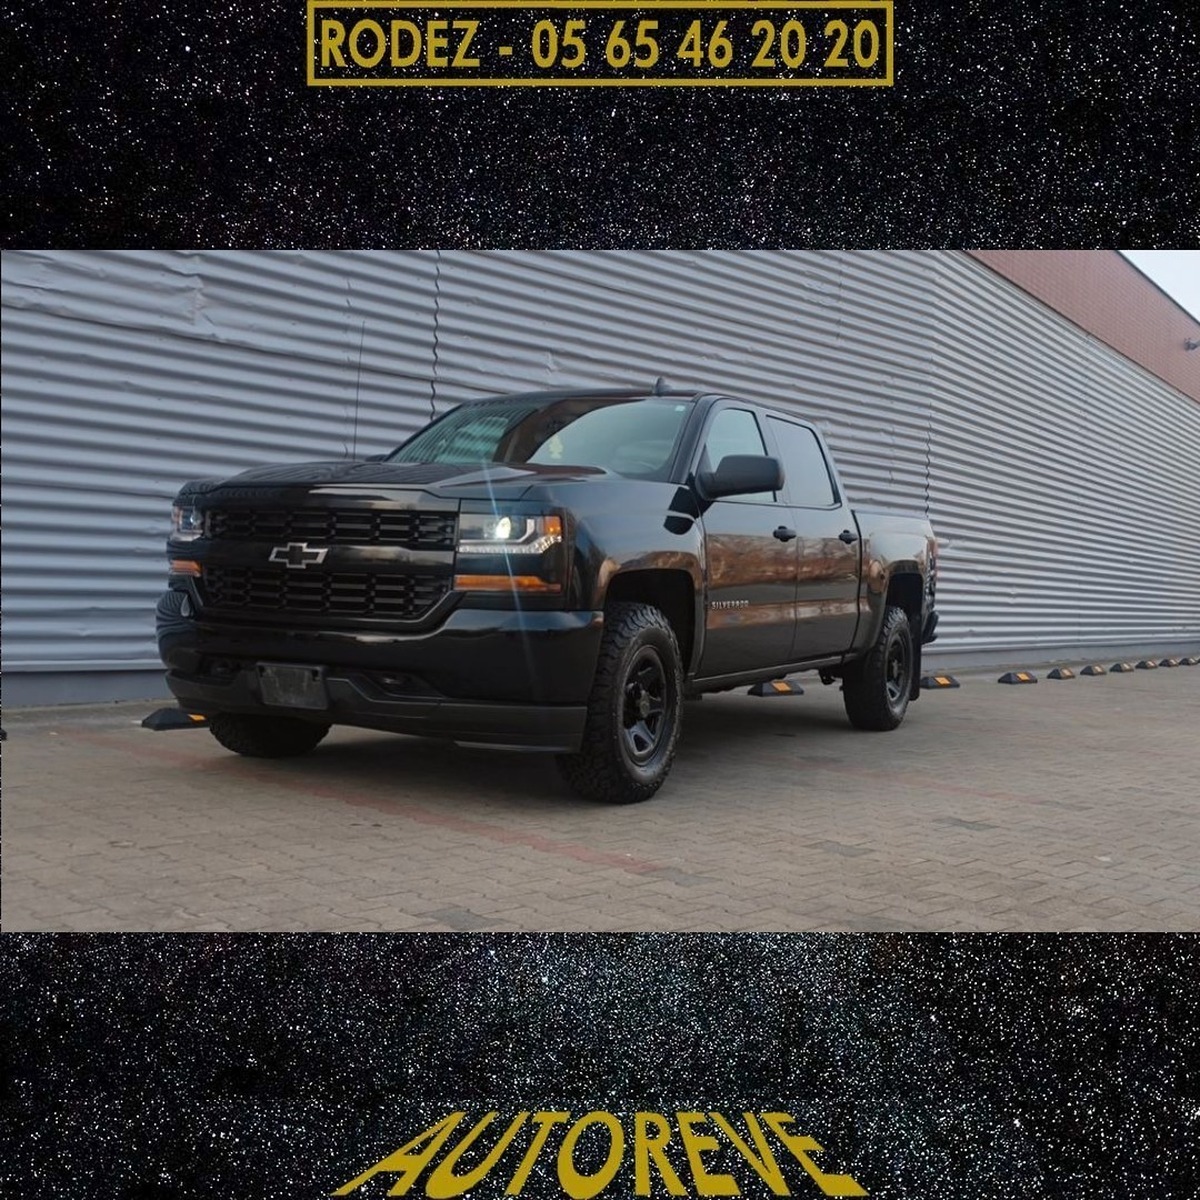 Chevrolet - Silverado